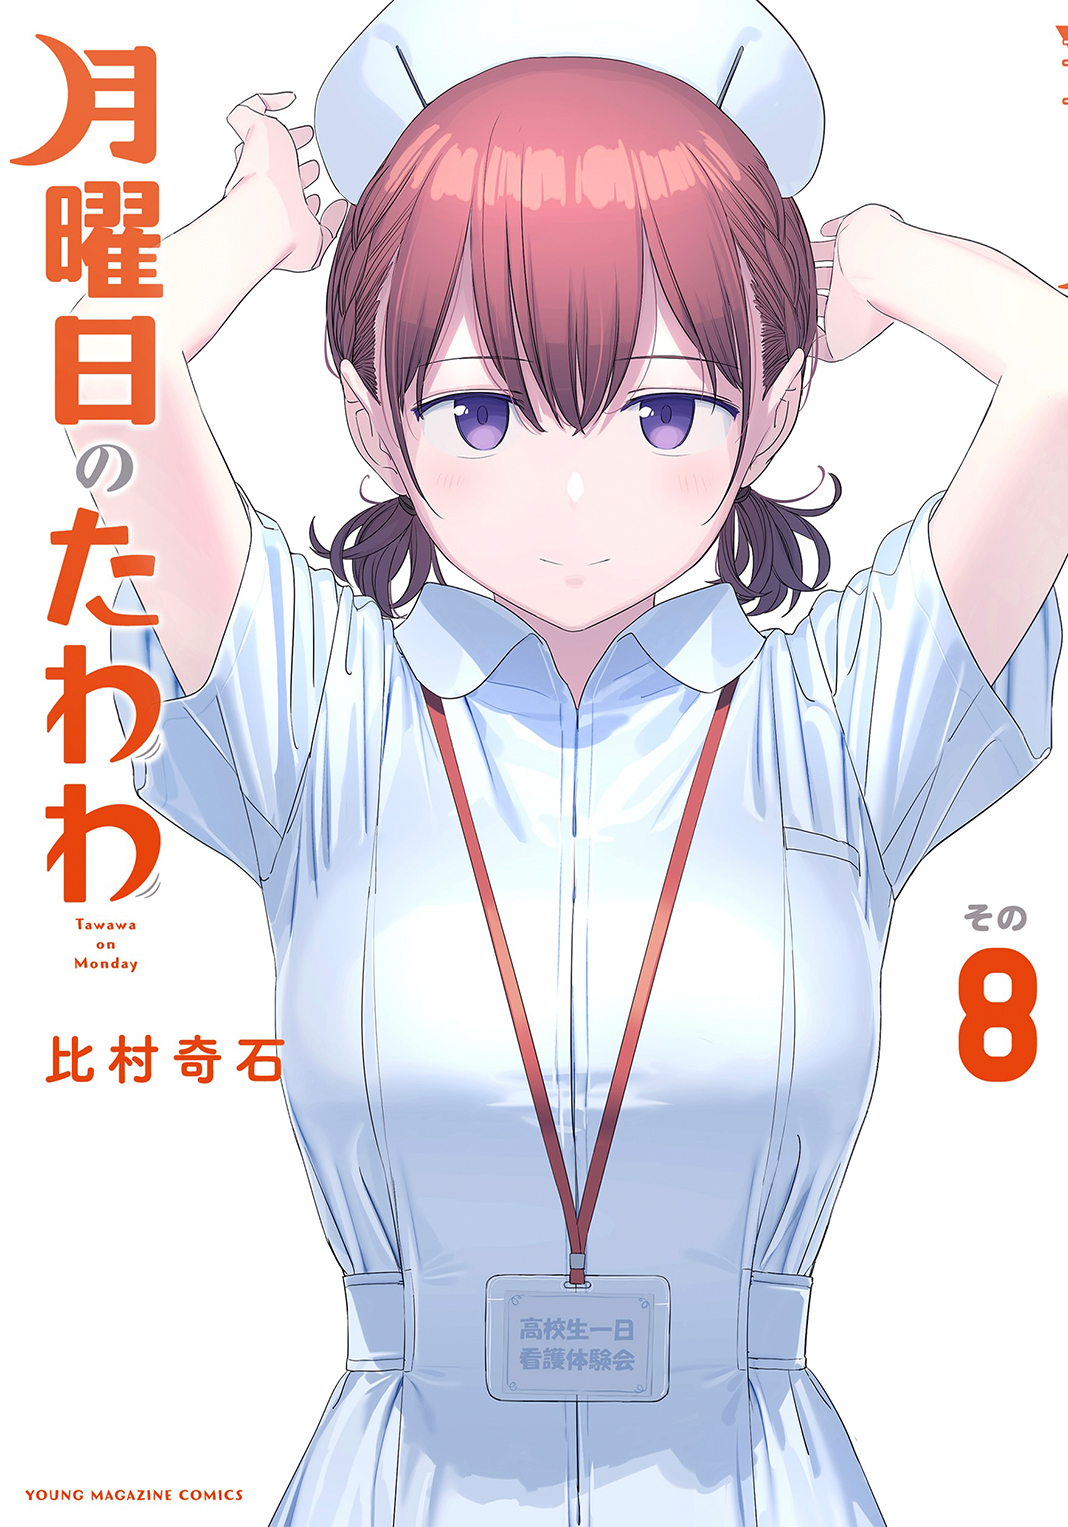 Tawawa manga